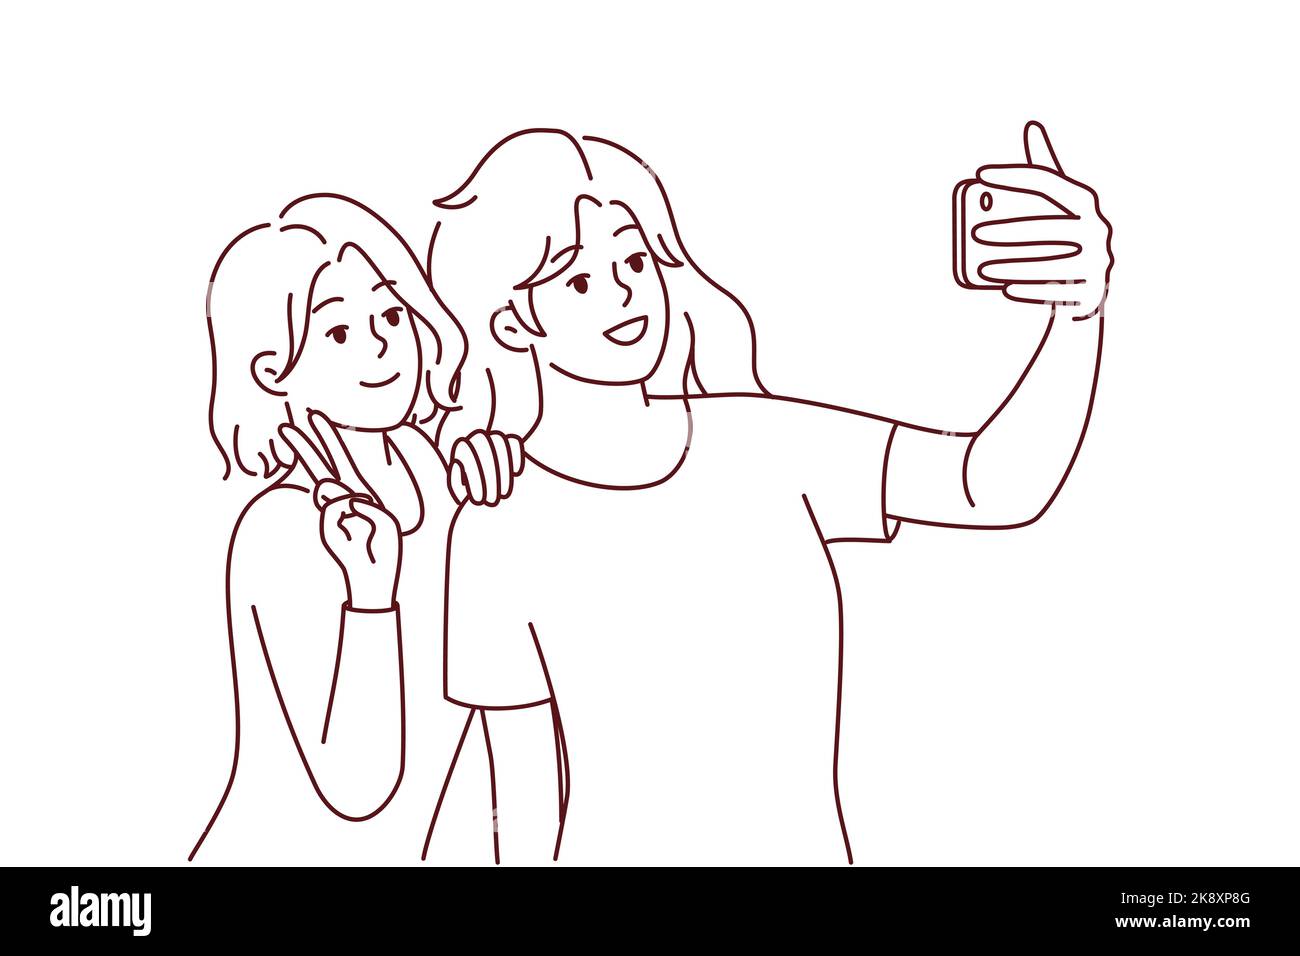 Ragazze sorridenti che fanno selfie sullo smartphone insieme. Le donne felici si divertono a scattare foto autoritratto su una moderna fotocamera del cellulare. Illustrazione vettoriale. Illustrazione Vettoriale